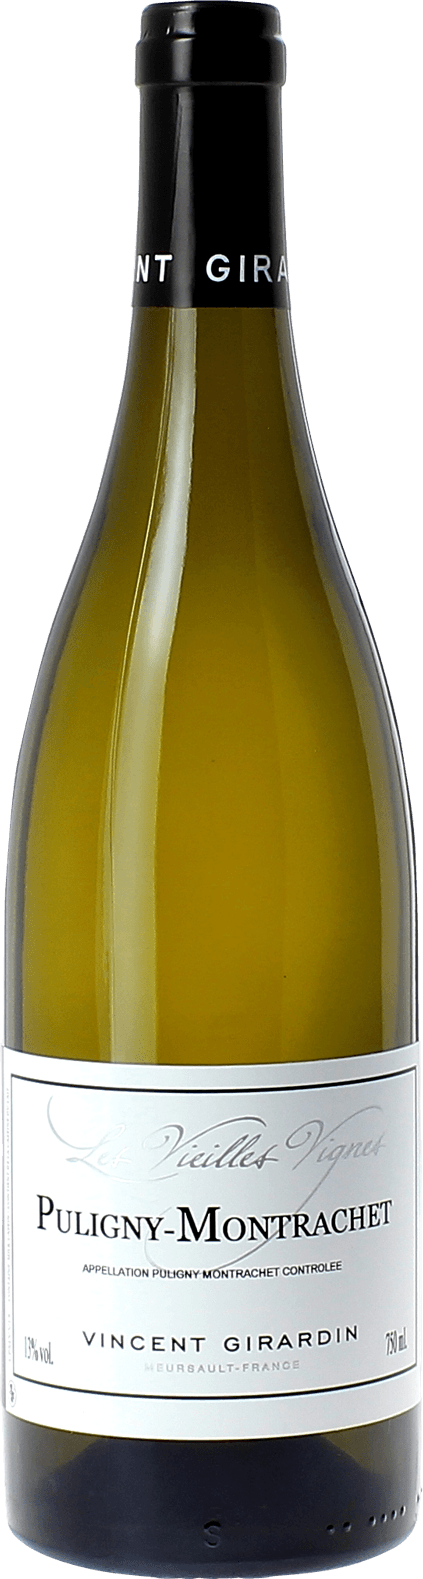 Puligny montrachet vieilles vignes 2017 Domaine GIRARDIN Vincent, Bourgogne blanc